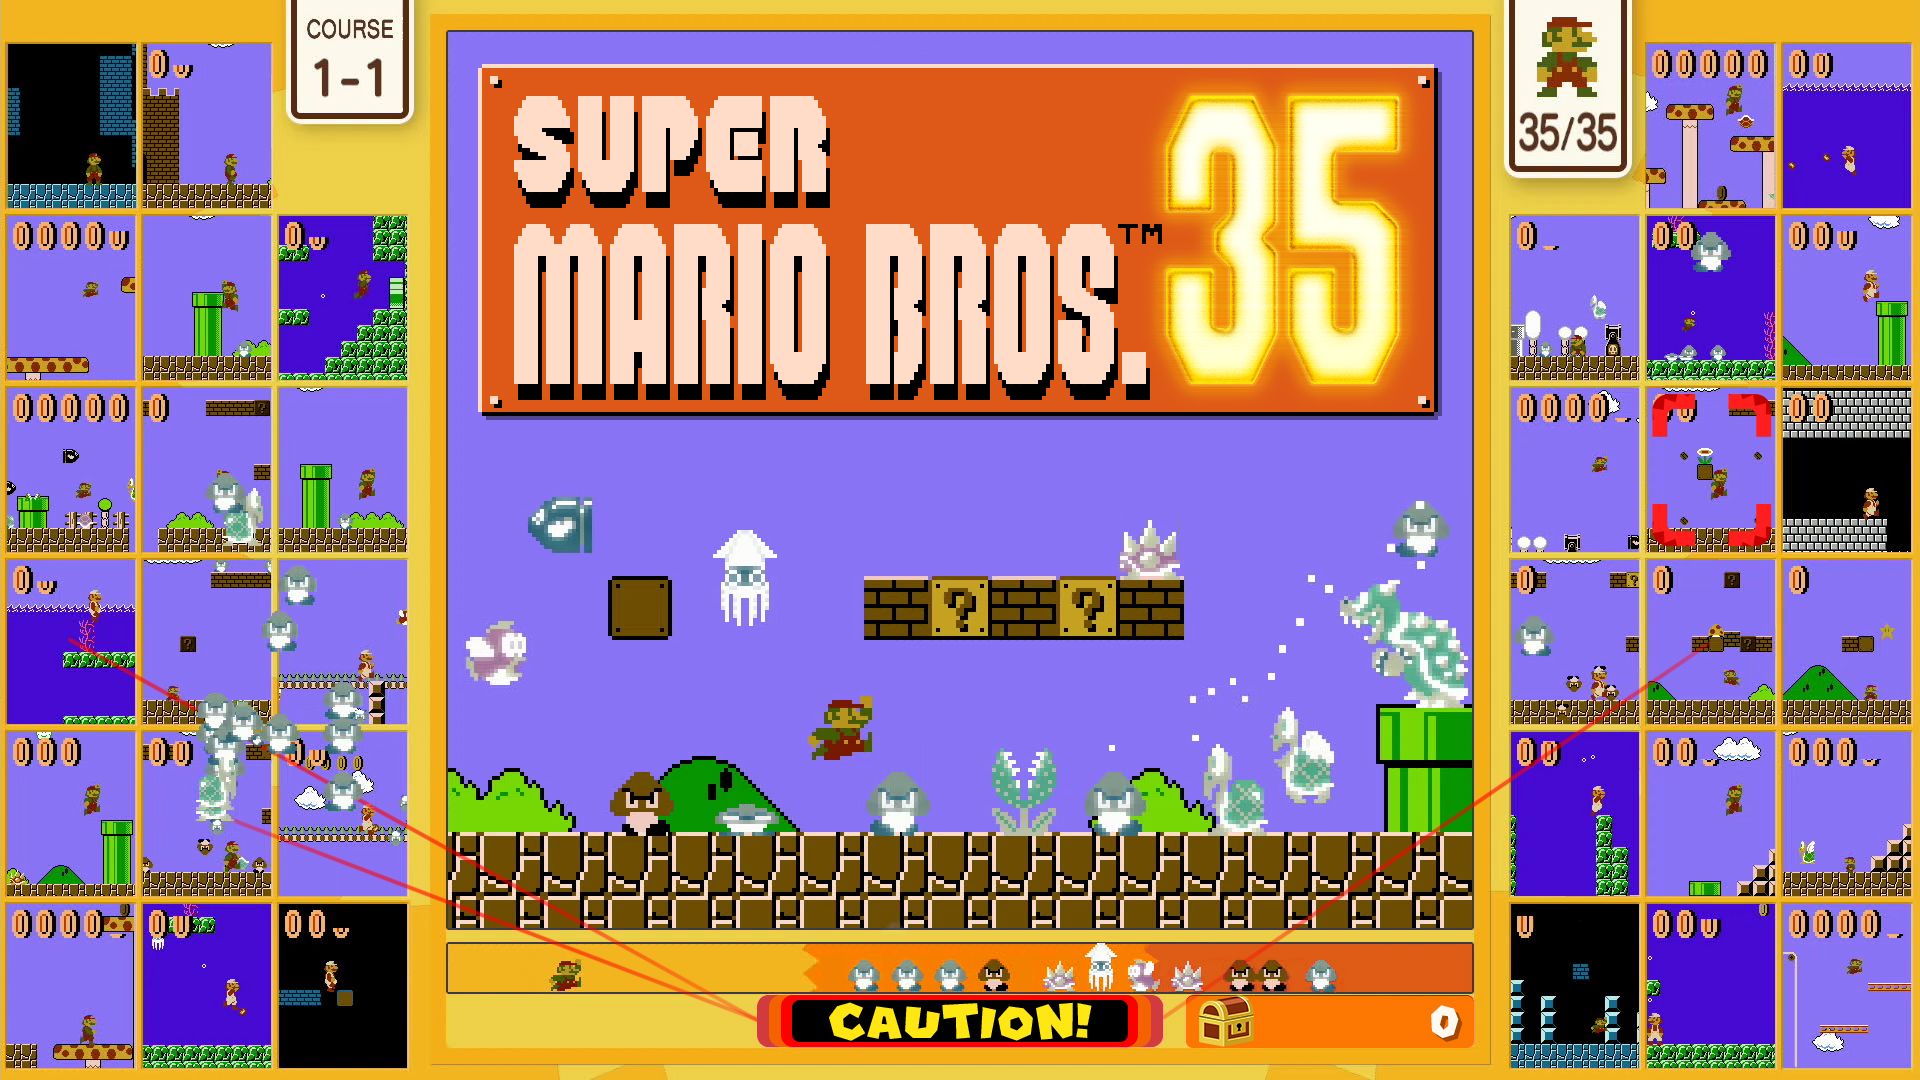 ʻO Super Mario Bros. 35